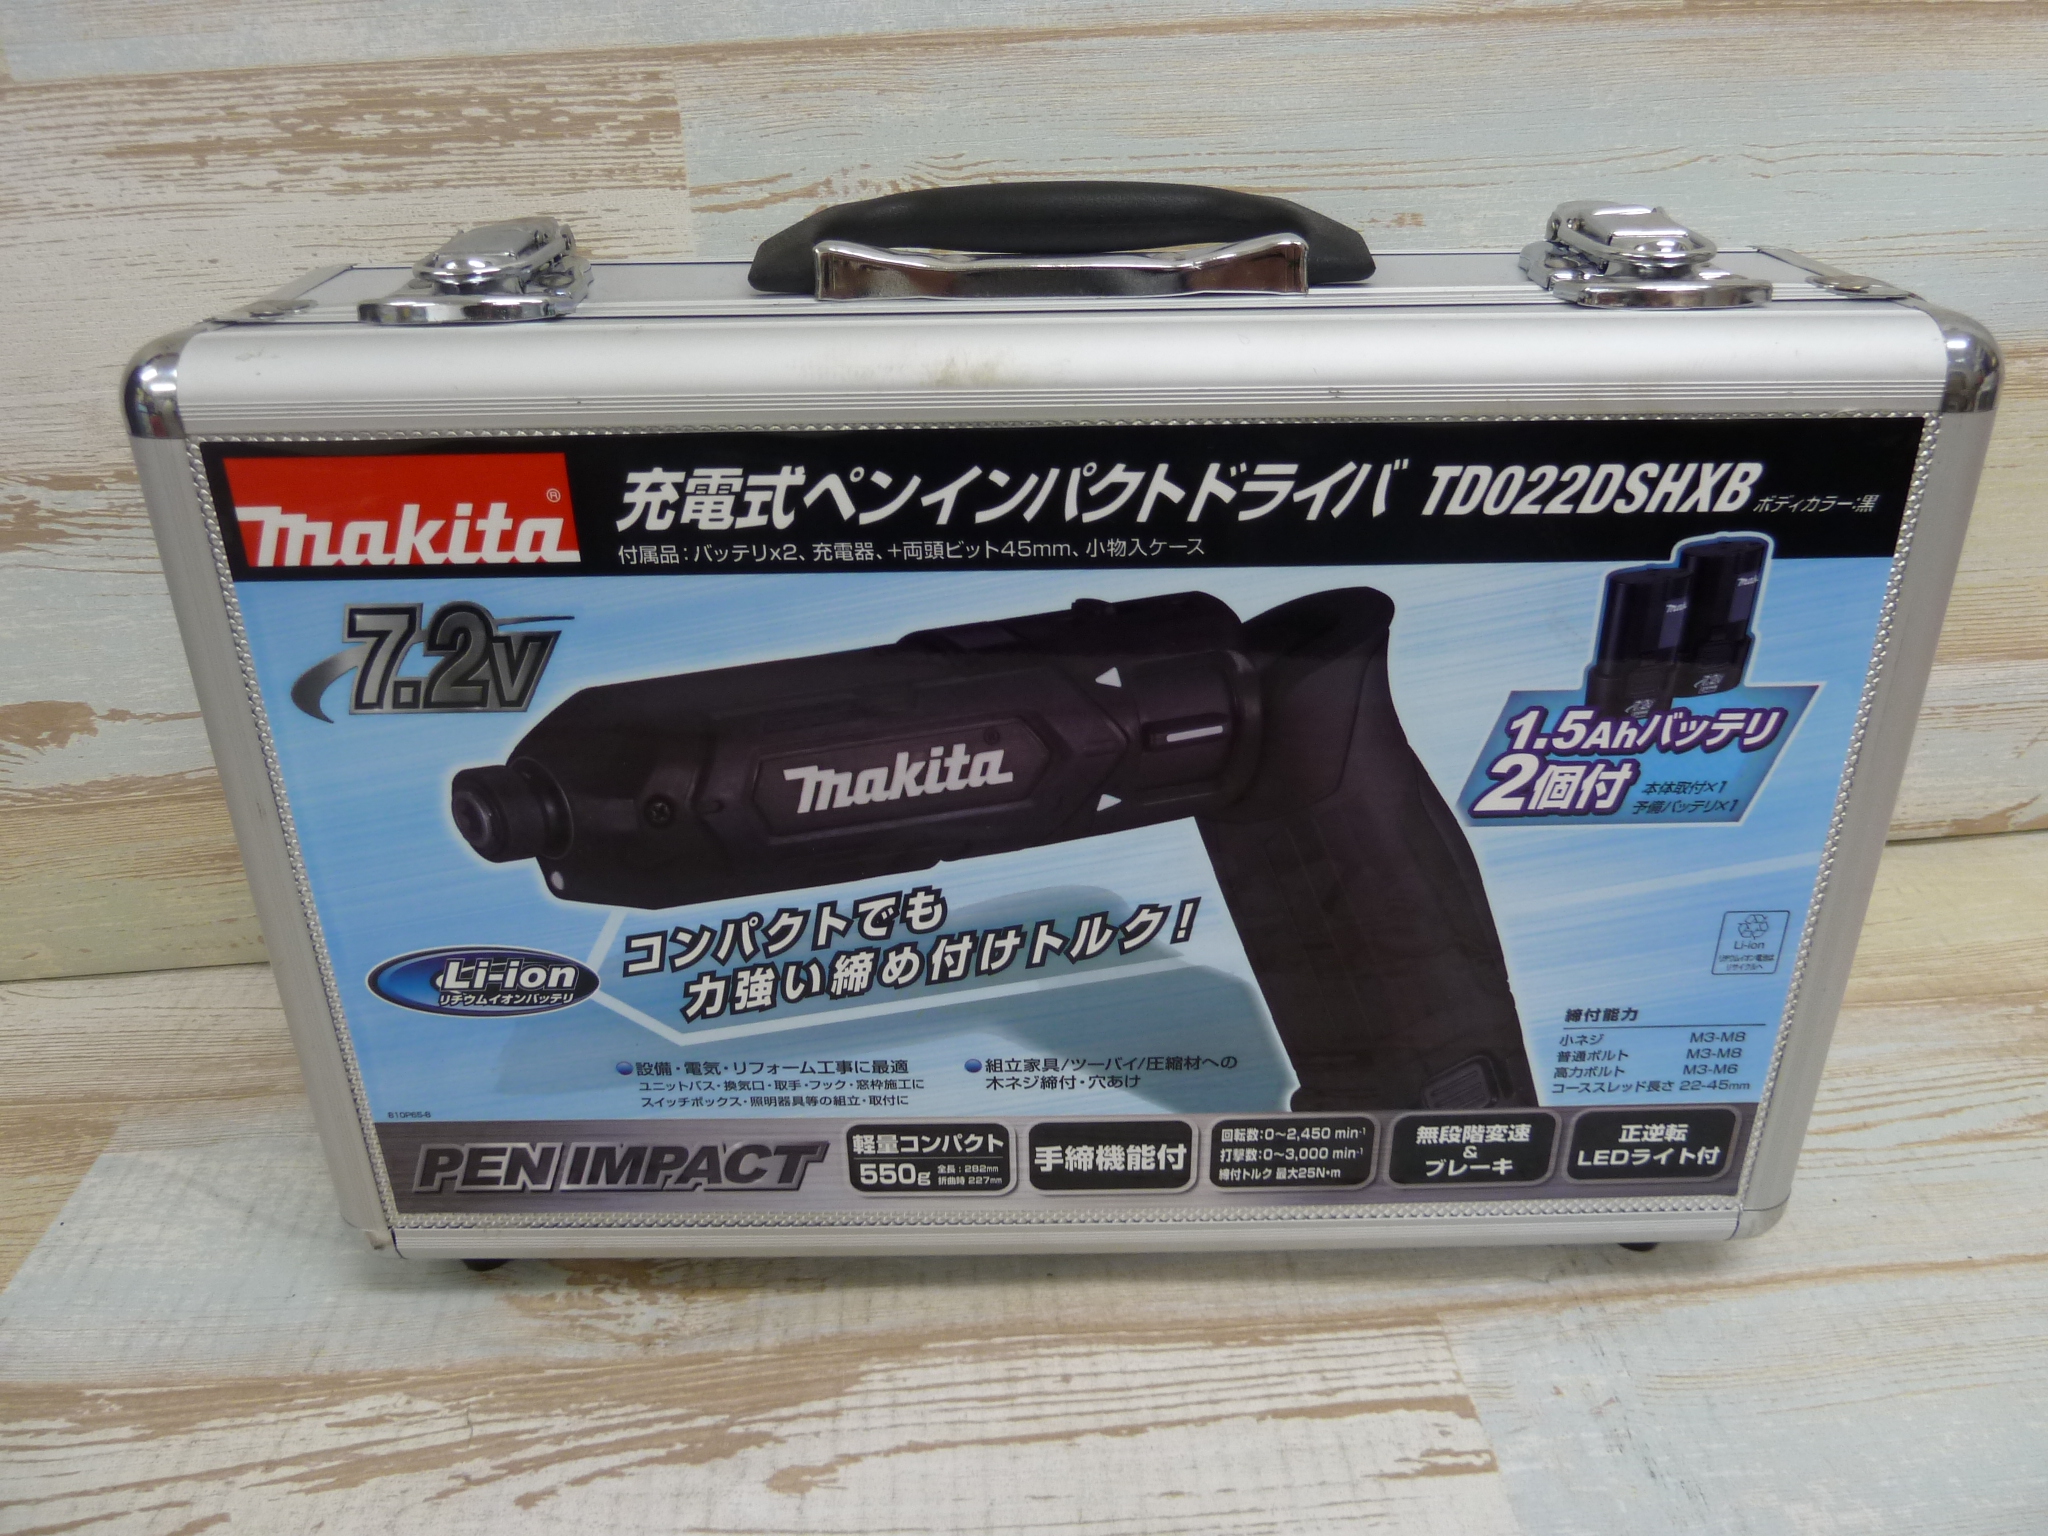 ☆比較的綺麗☆makita マキタ 18V 充電式インパクトドライバ TD147DRFX 3.0Ahバッテリー2個(BL1830) 充電器(DC18RC) ケース付 64276